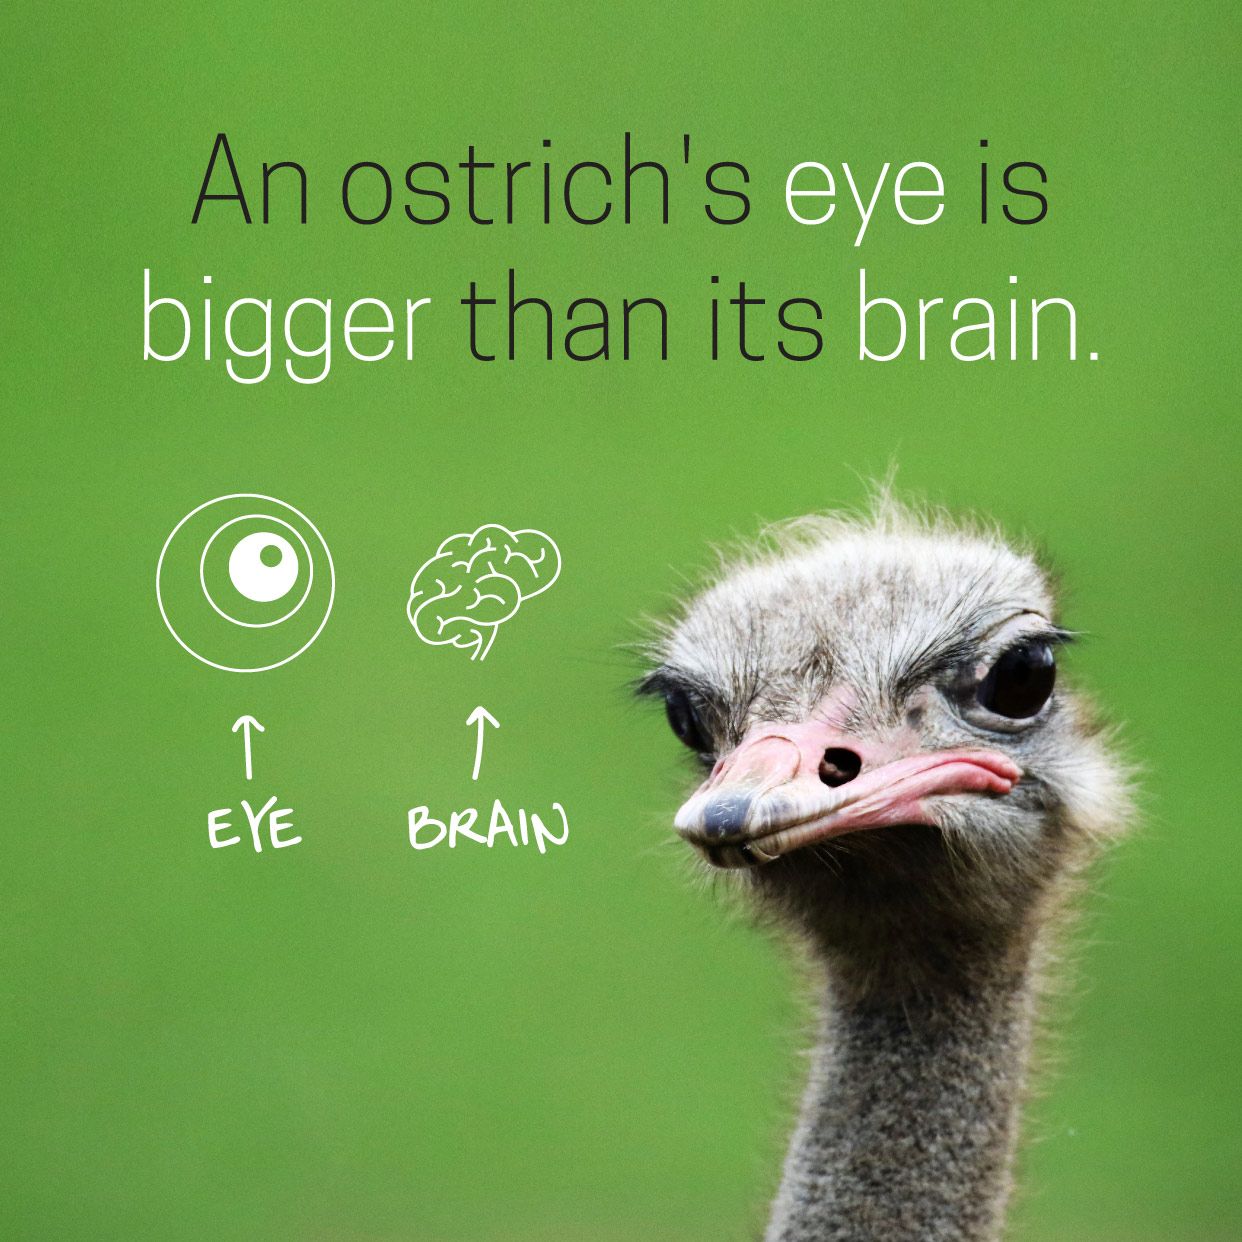 Is Ostrich eye bigger than brain?